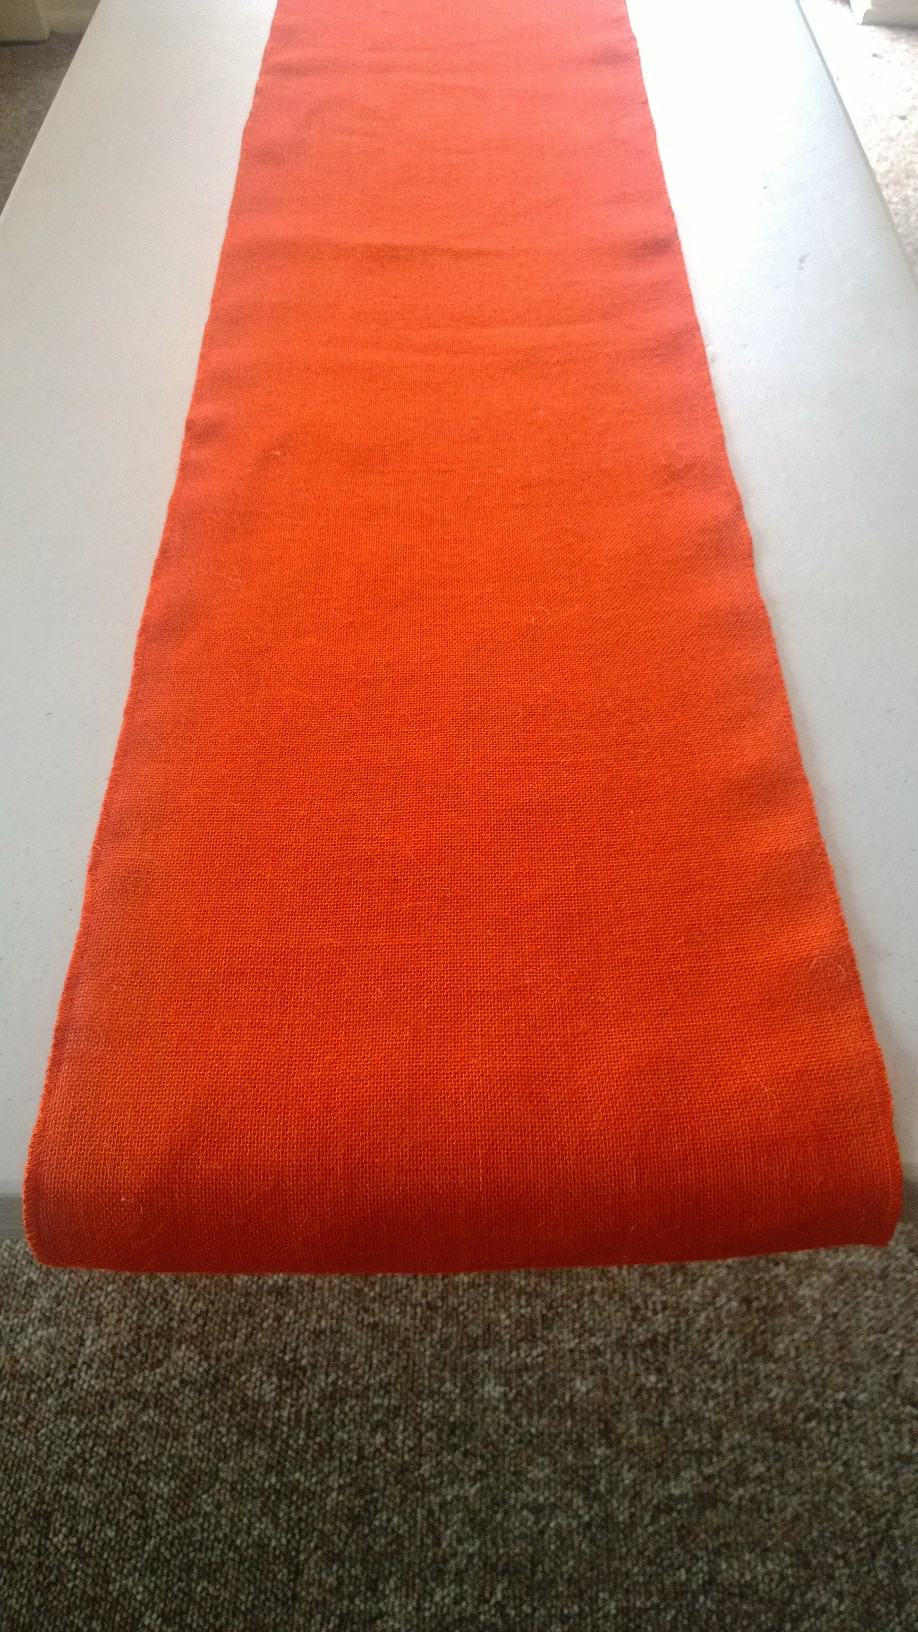 Tangerine Burlap Table Runner (Sewn Edges) - 14" x 108"